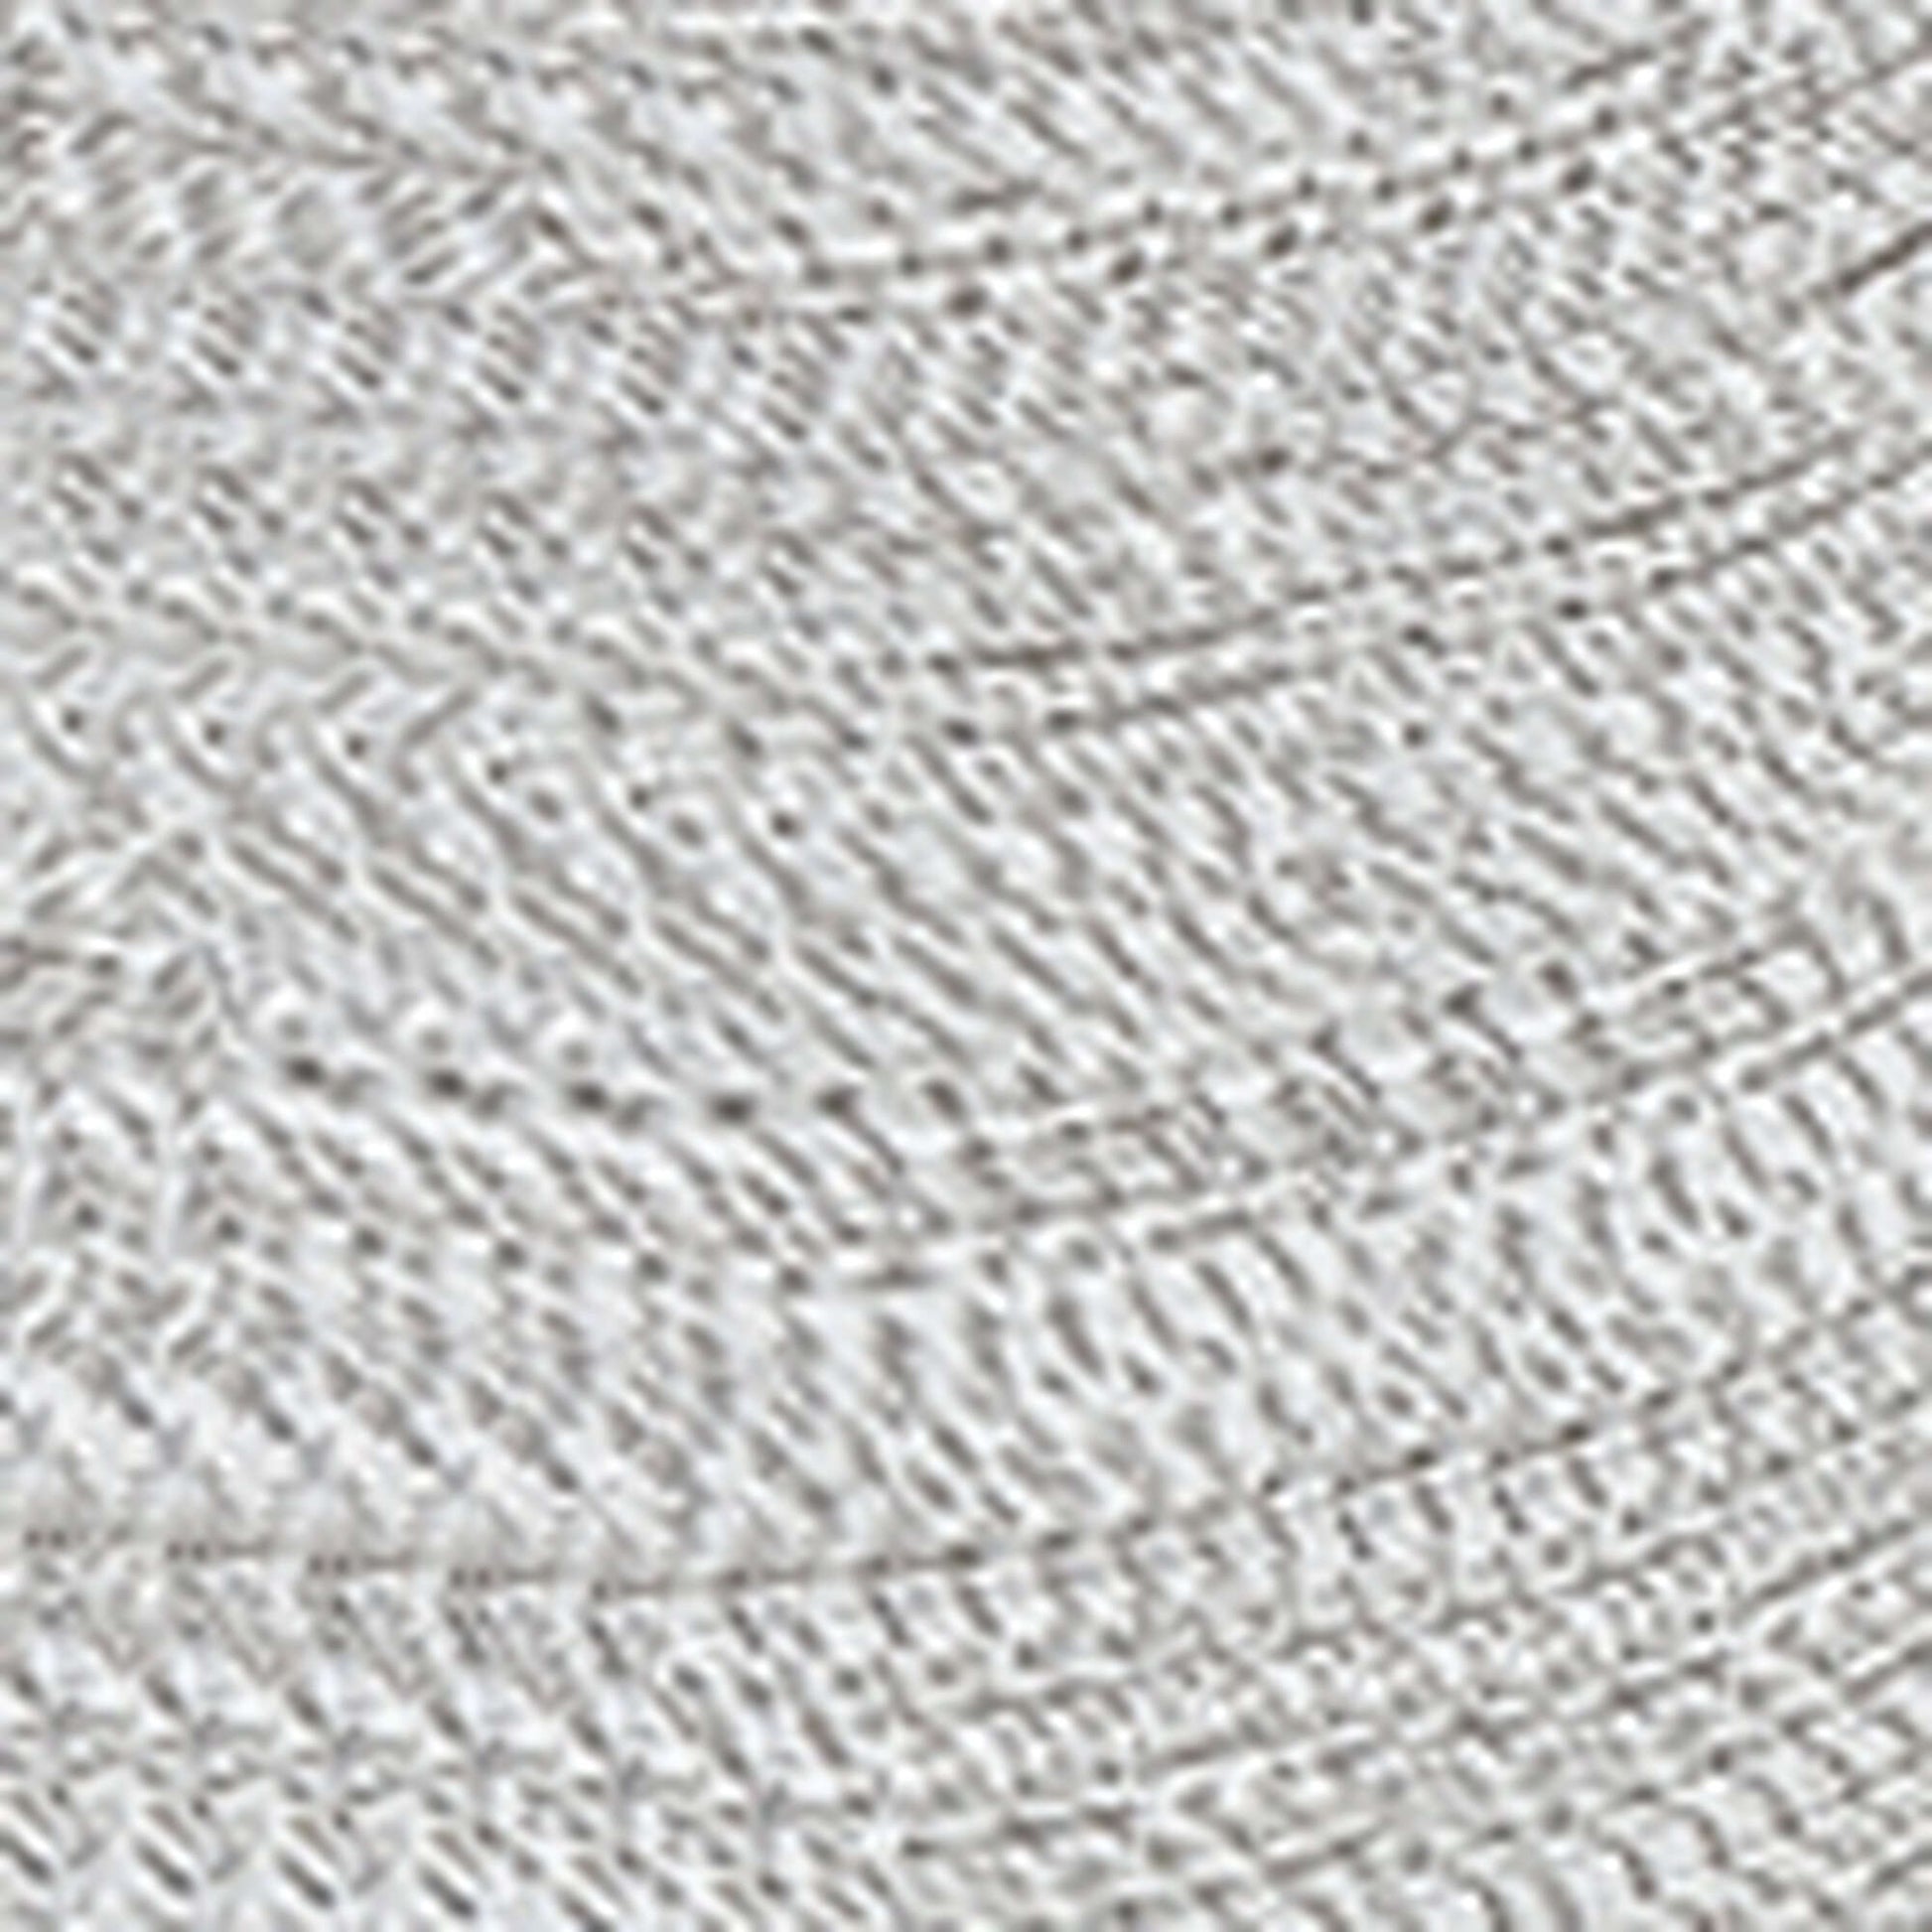 Coats & Clark Metallic Embroidery Thread (600 Yards)